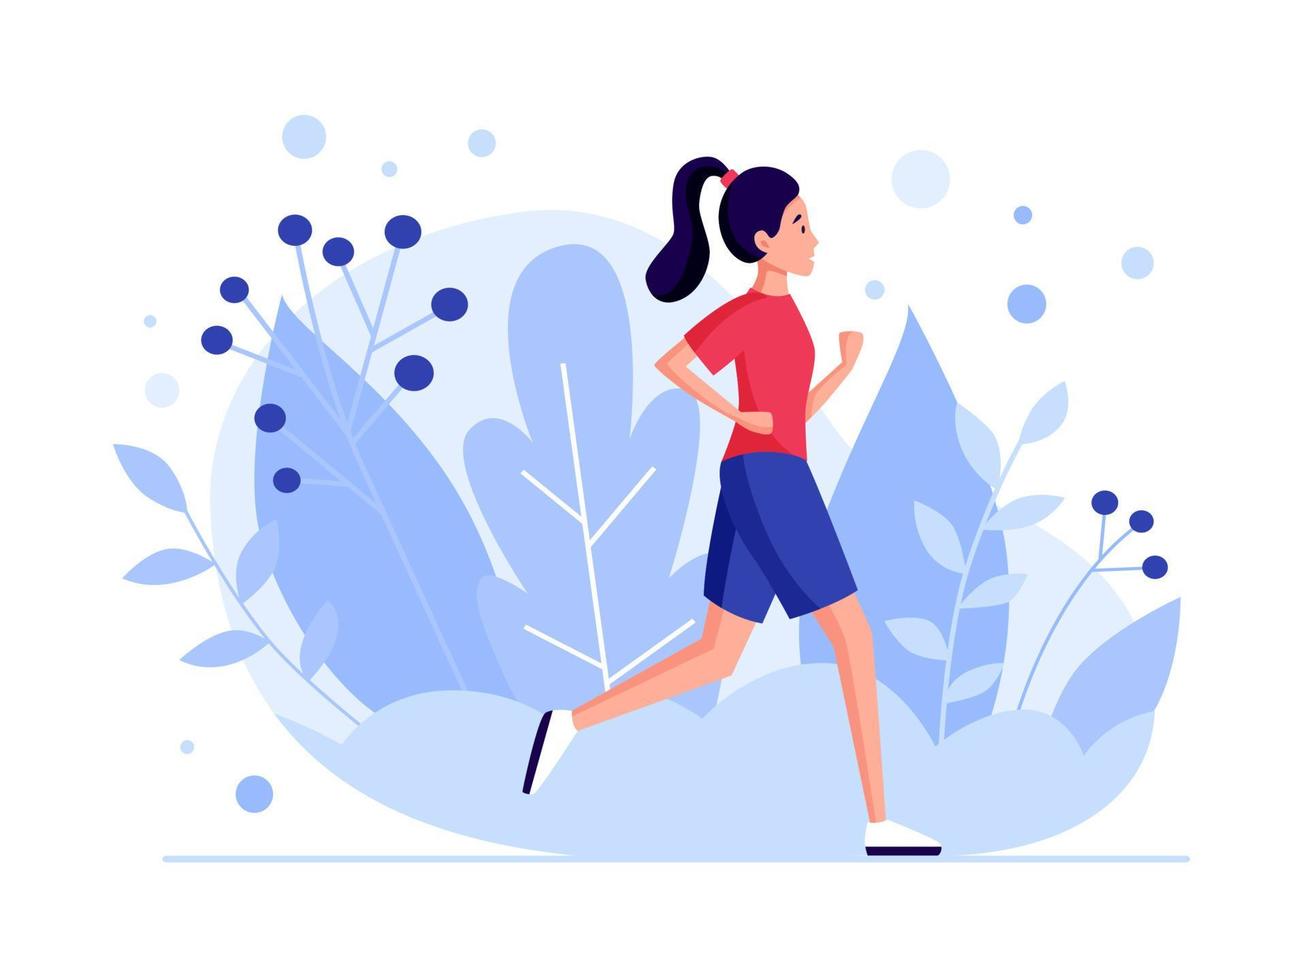 concetto di donna in esecuzione. disegno della ragazza da jogging attivo. banner per maratona, corsa in città, allenamento, esercizio cardio. illustrazione vettoriale piatto.